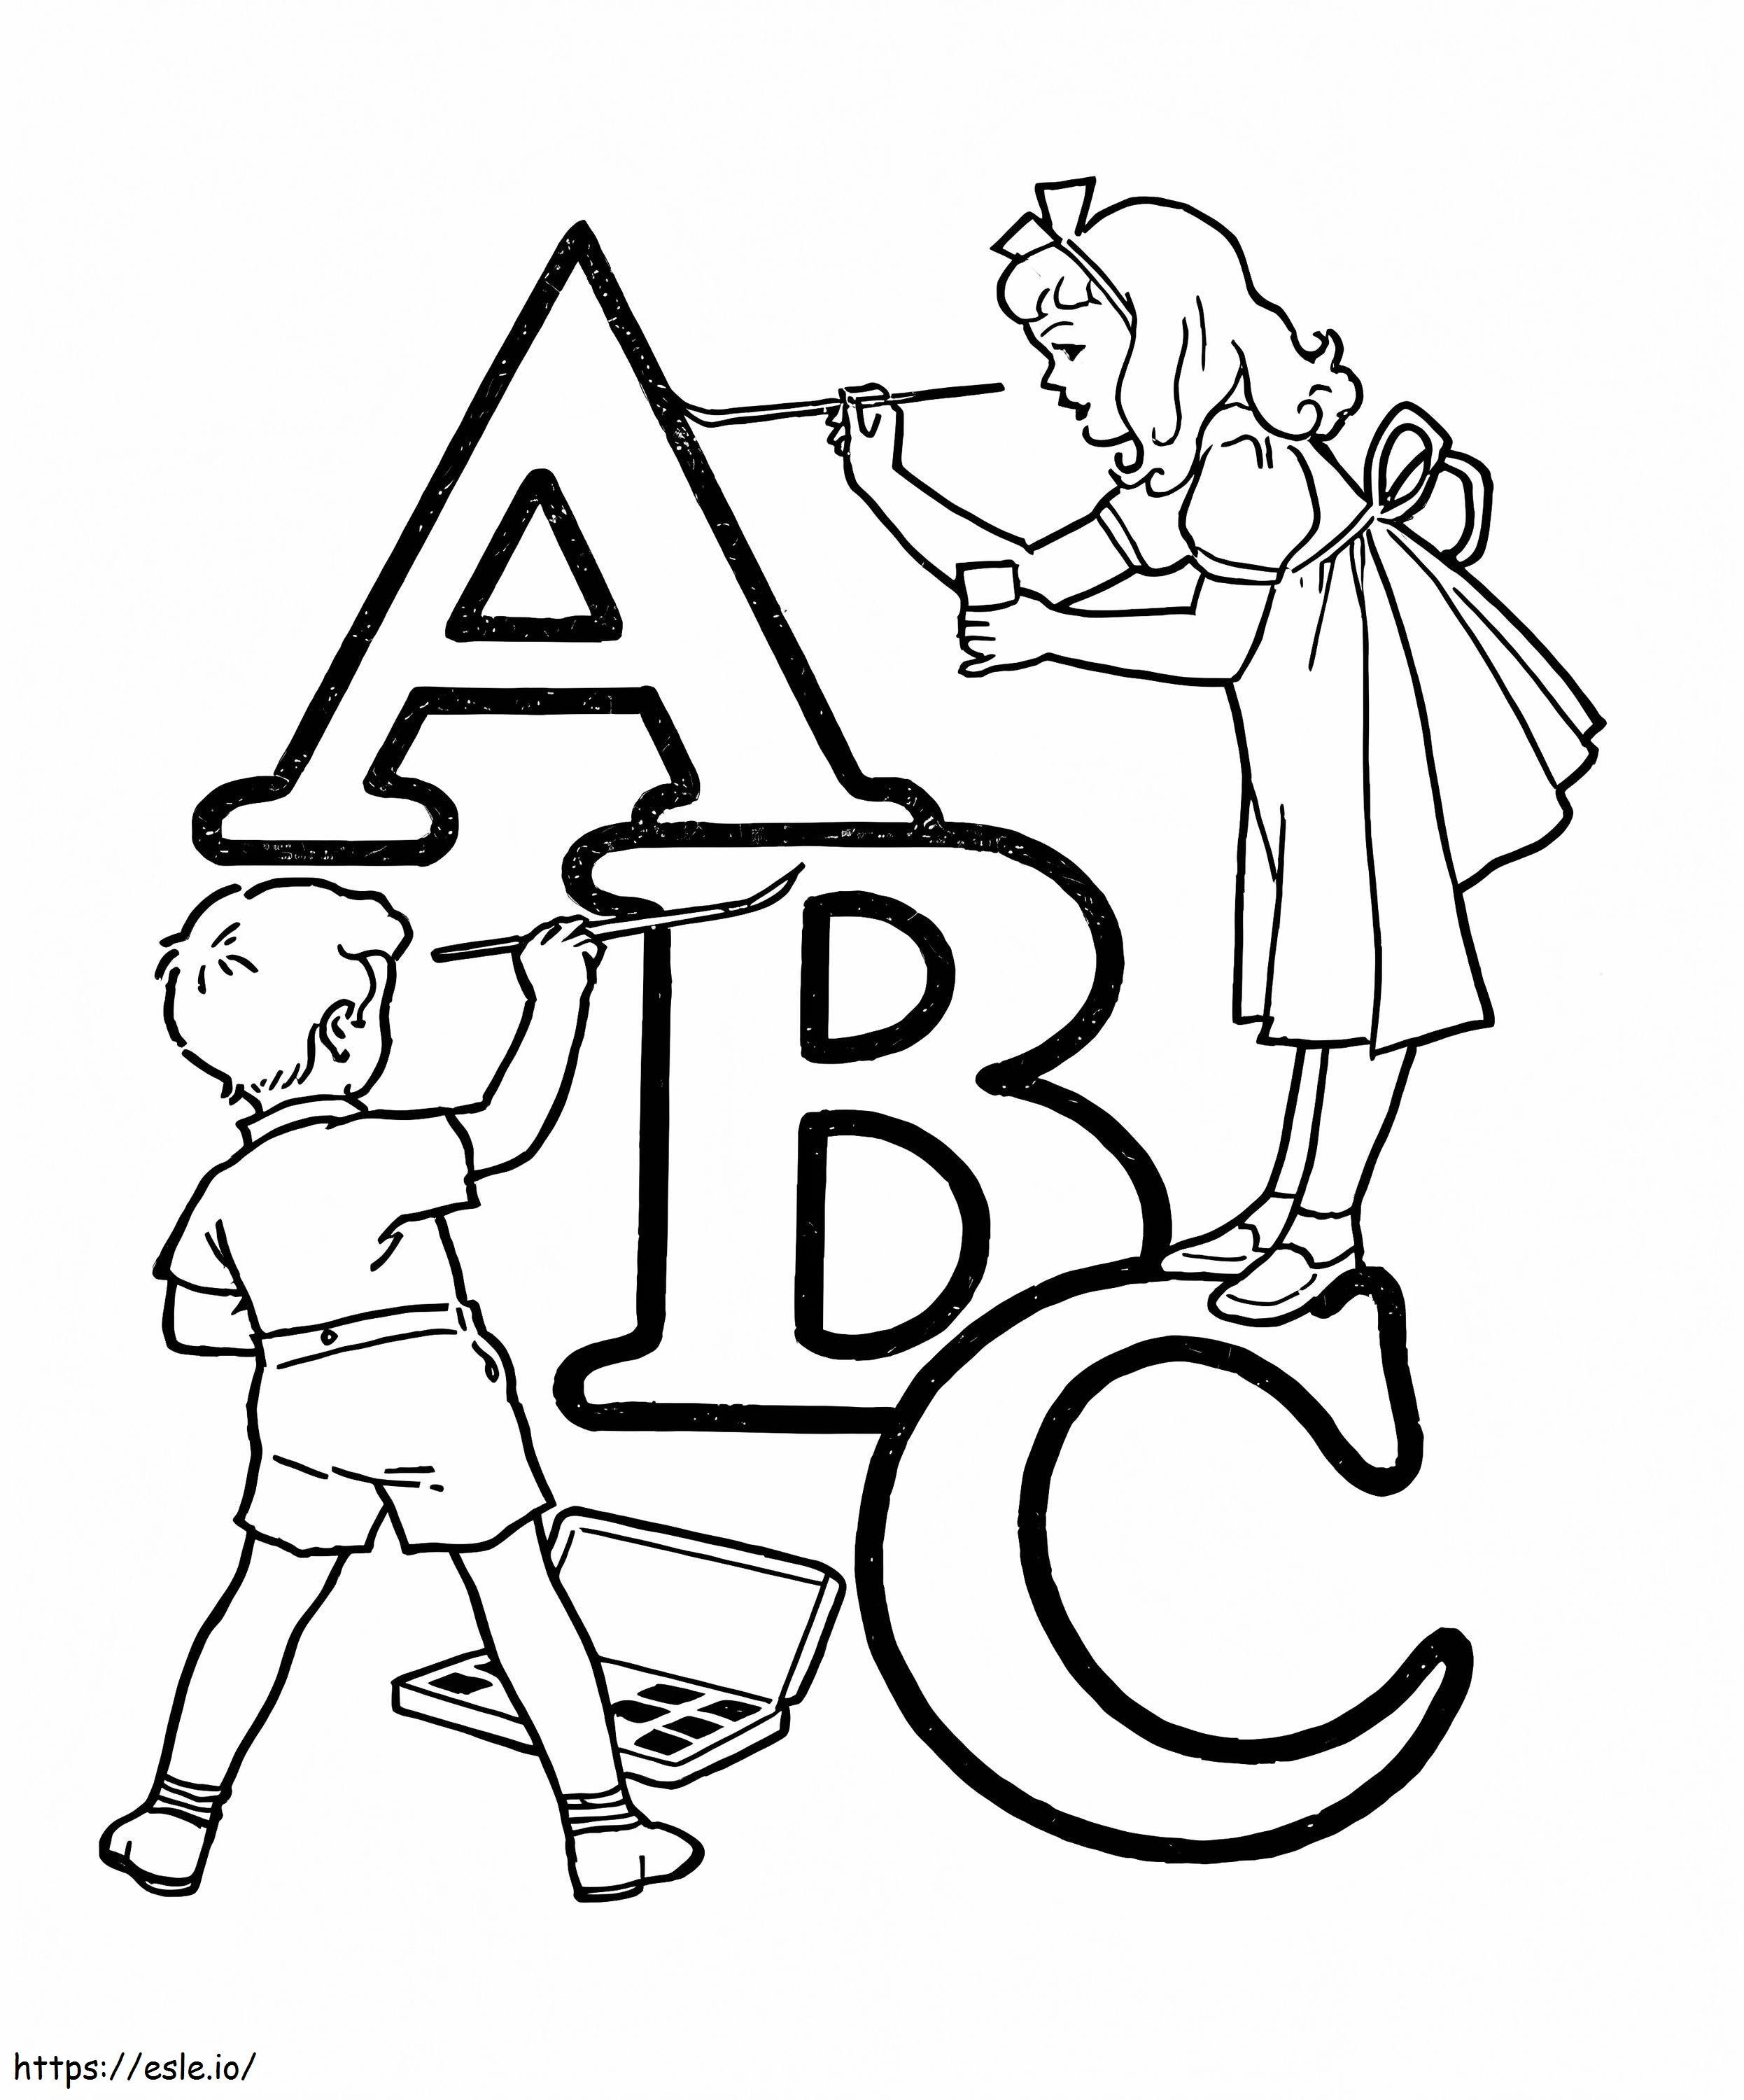 Kinder mit ABC ausmalbilder